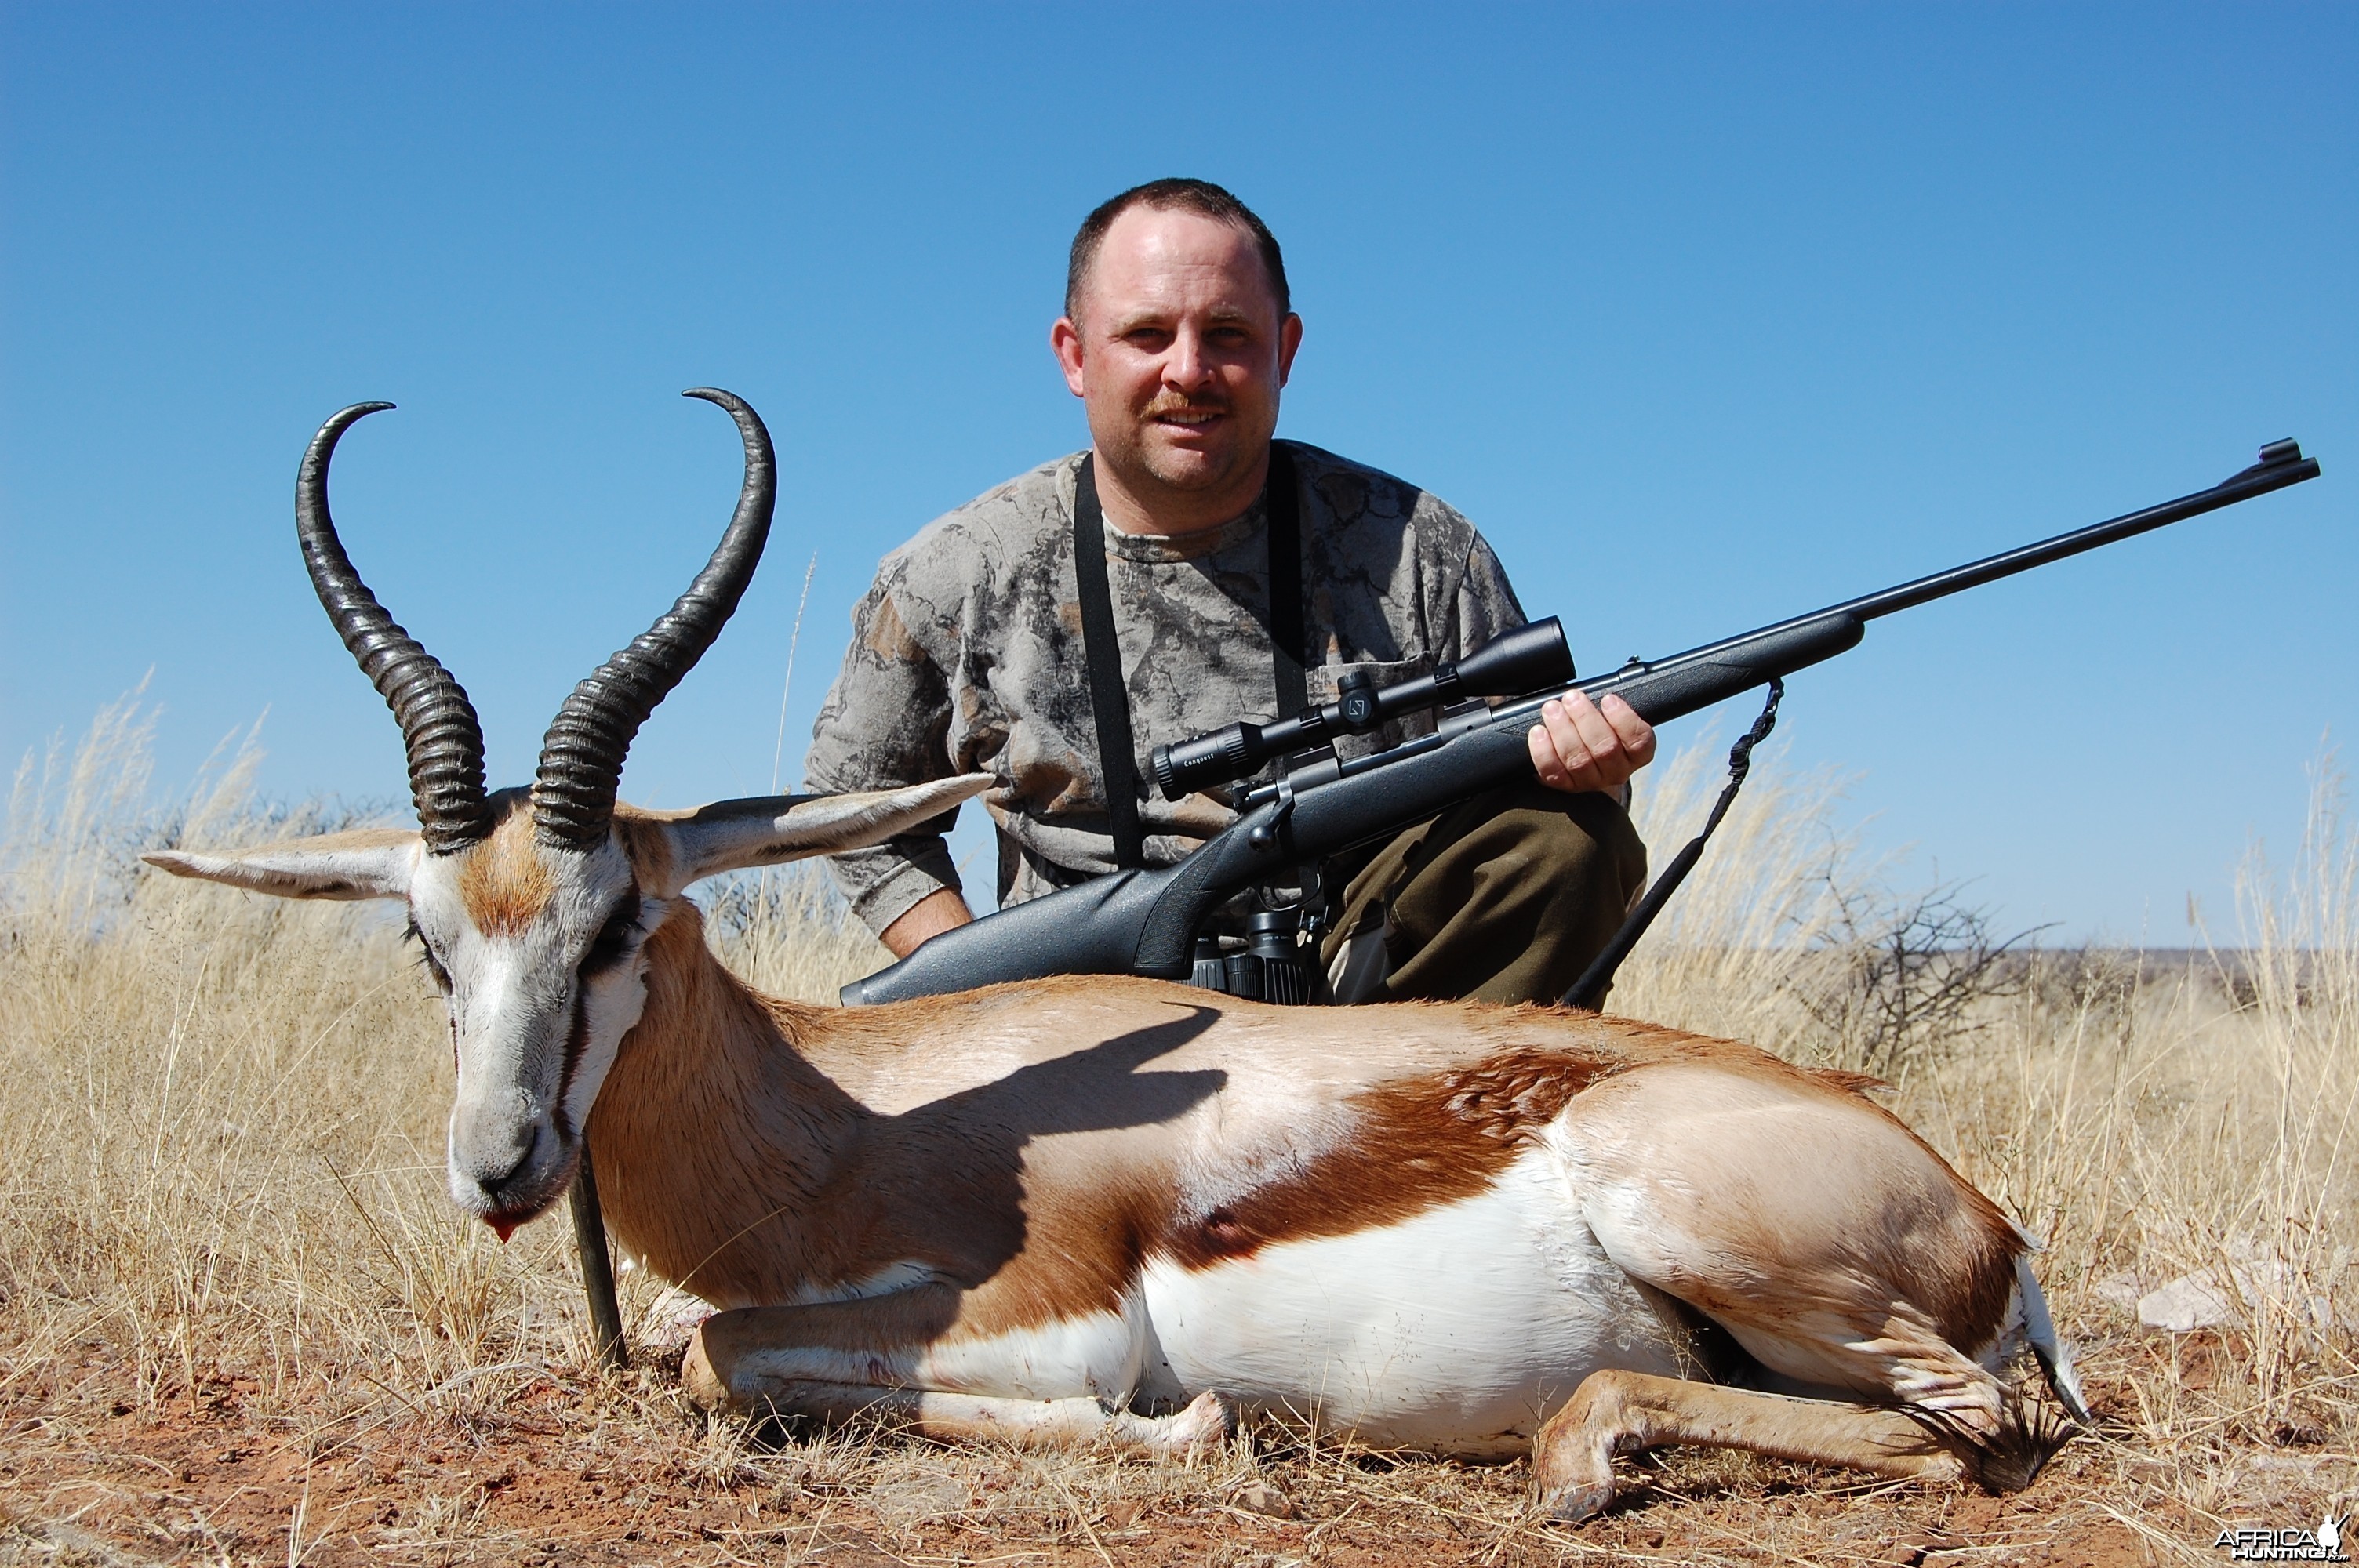 Springbuck with Kowas Hunting Safaris